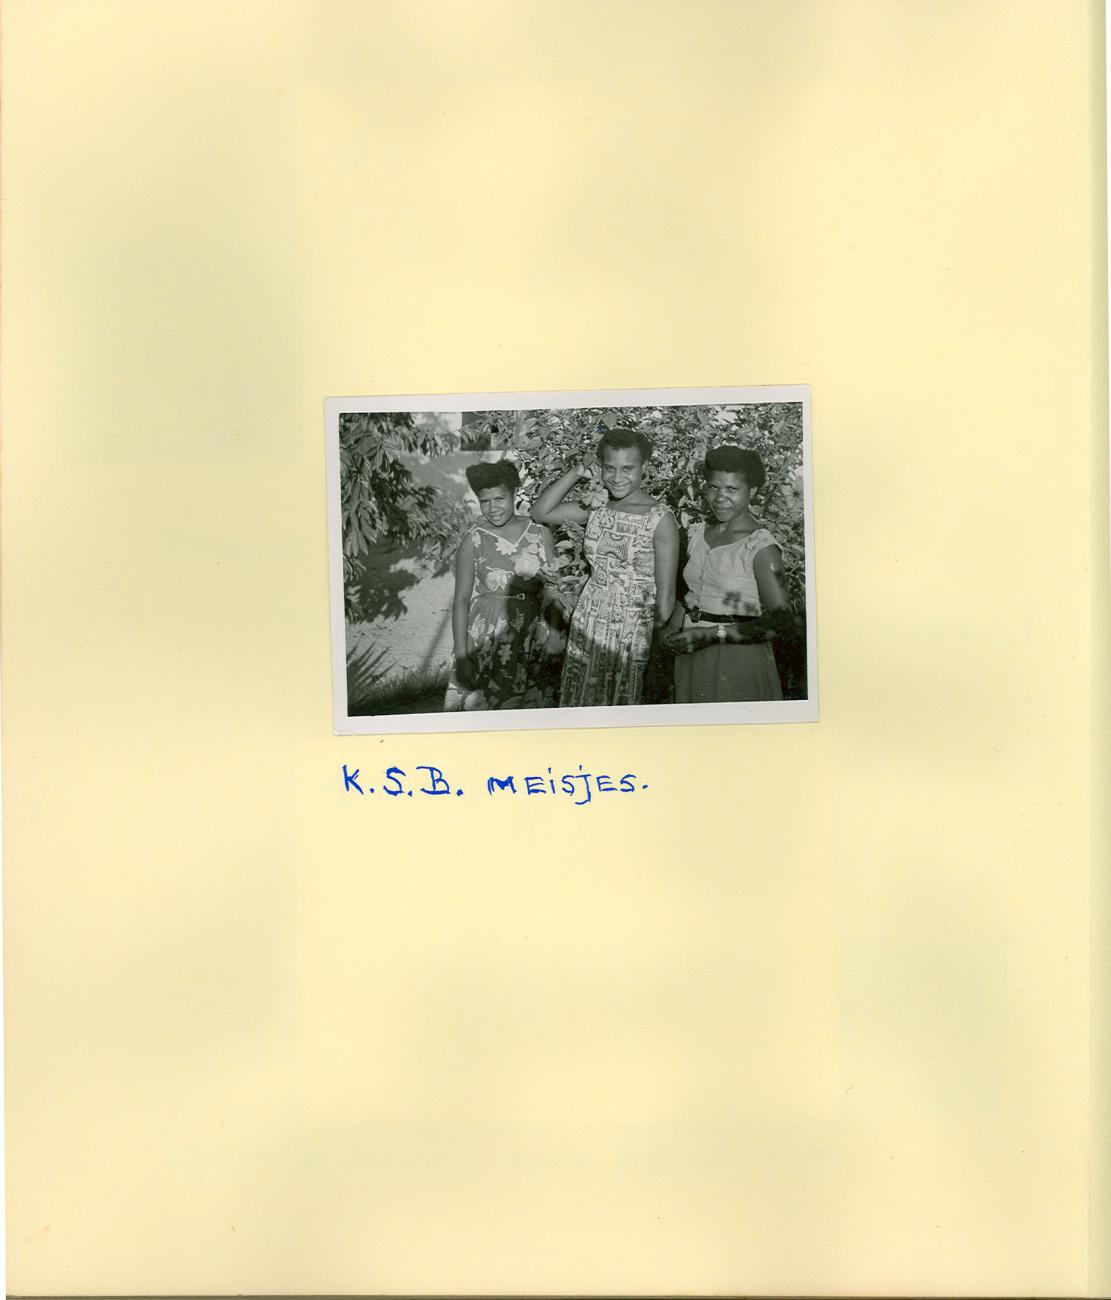 BD/83/24 - 
Portret van drie KSB-meisjes
